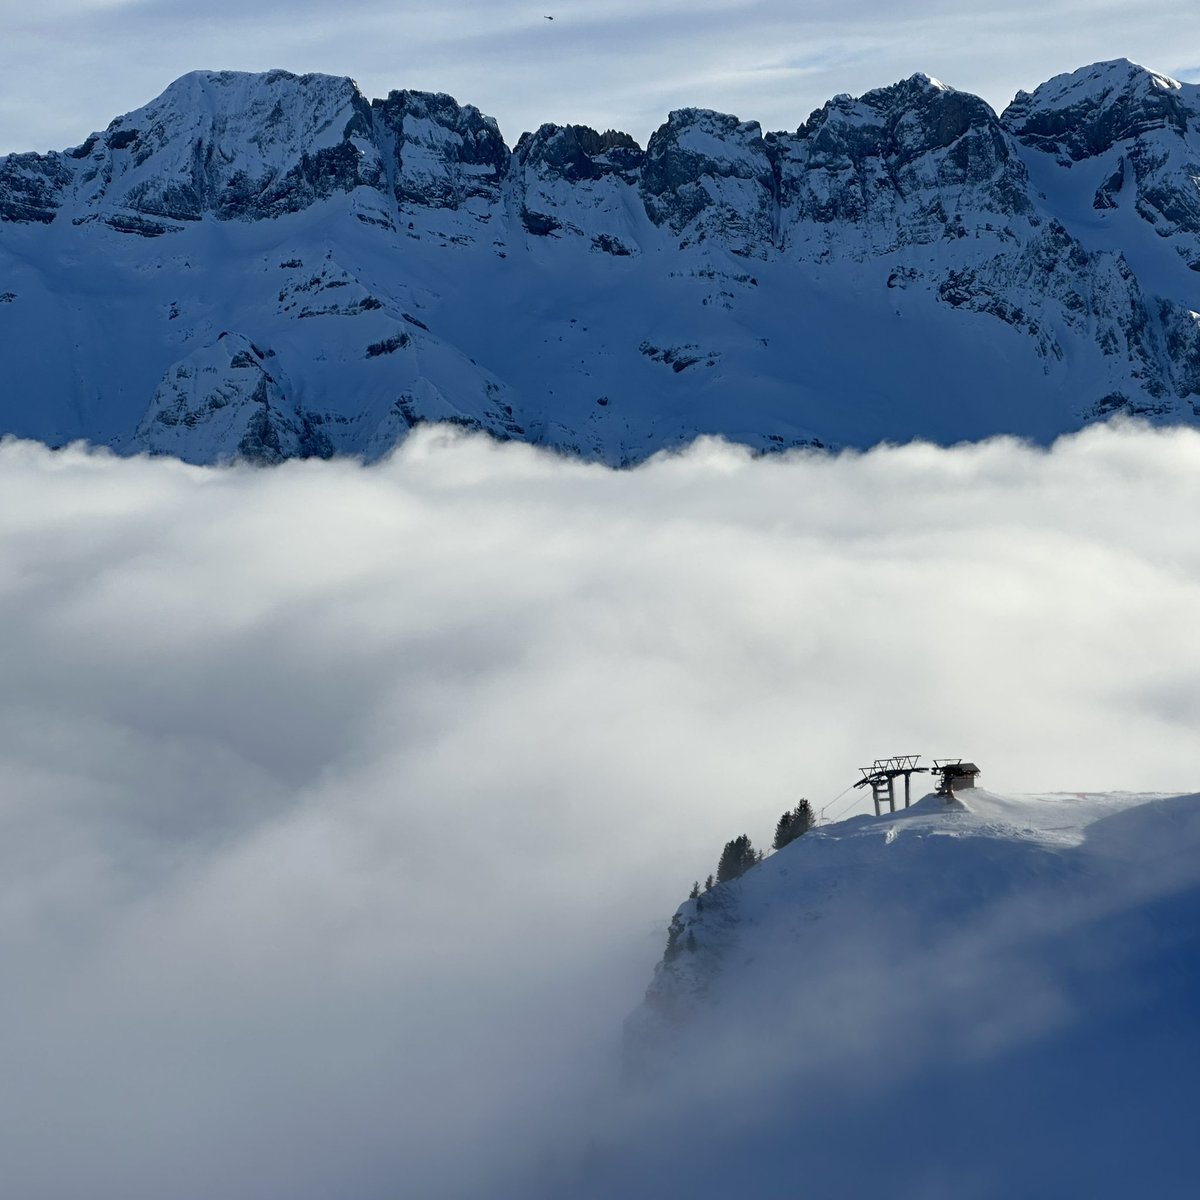 Skiing down the mountain with this view…
#dentsdumidi #portesdusoleil